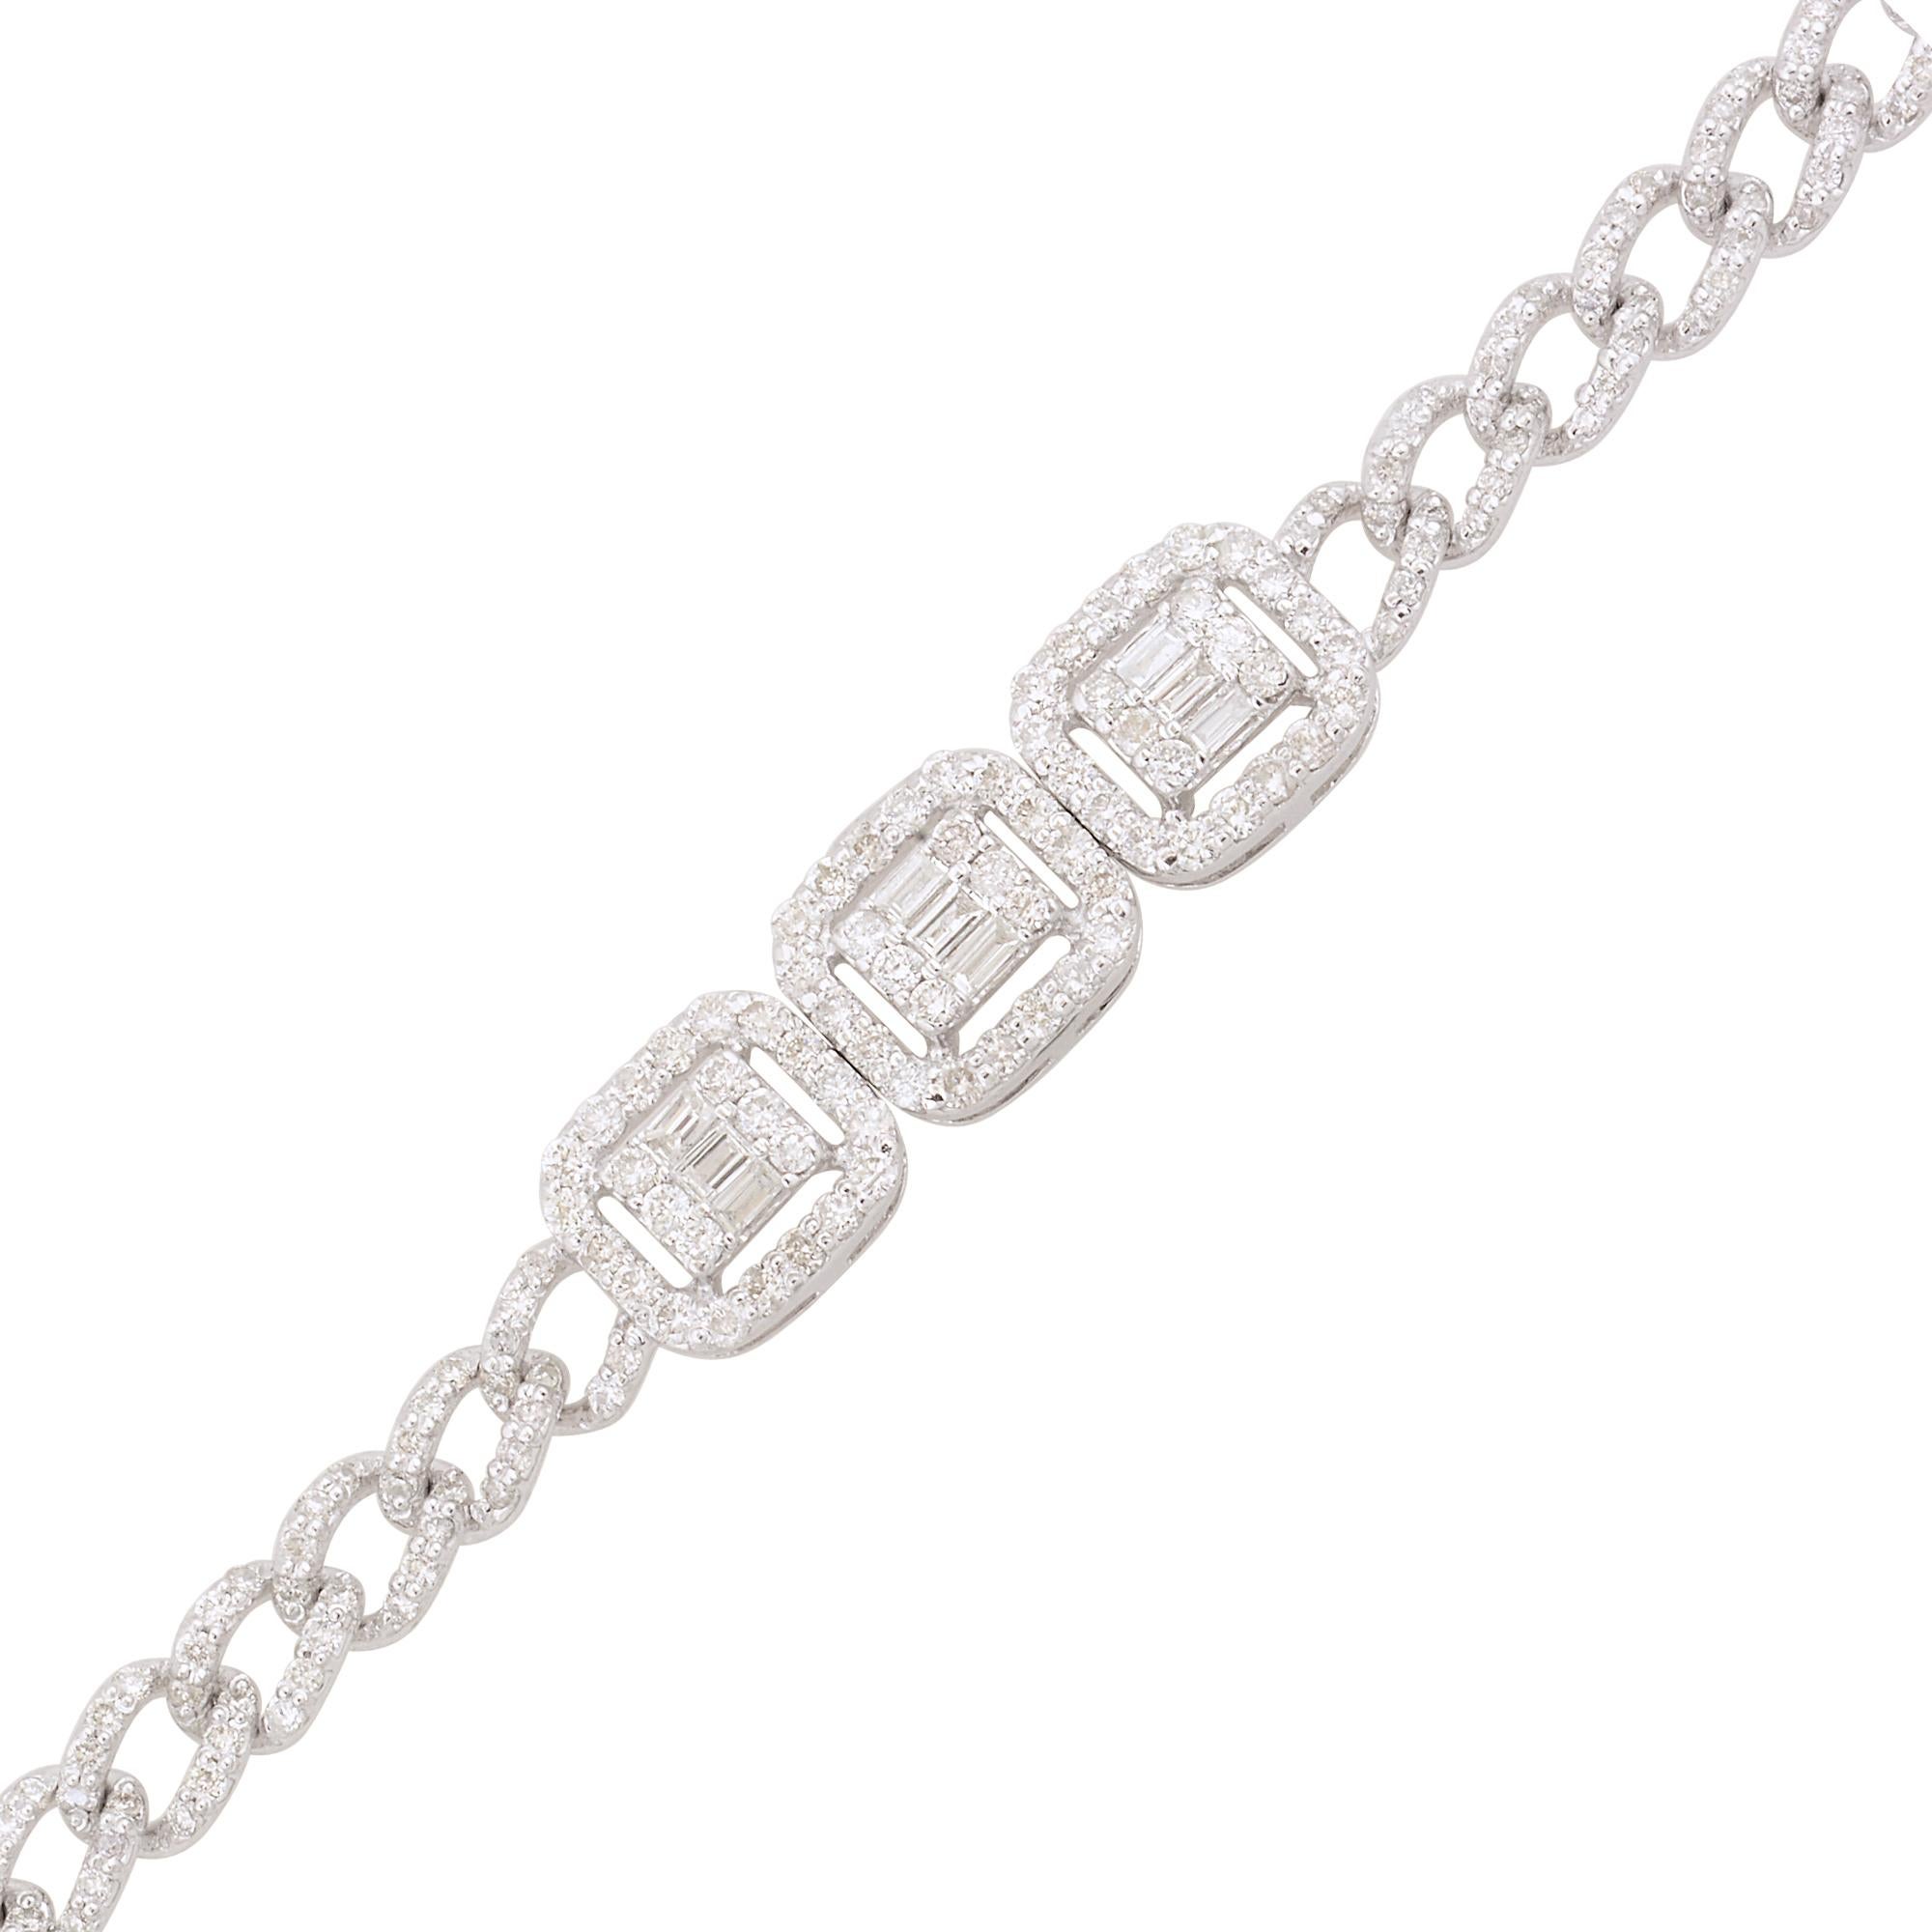 Dieses Diamantarmband ist ein vielseitiges Schmuckstück, das zu verschiedenen Anlässen getragen werden kann, von zwanglosen Ausflügen bis hin zu formellen Anlässen. Es verleiht jedem Ensemble einen Hauch von Glamour und Raffinesse und kann mit